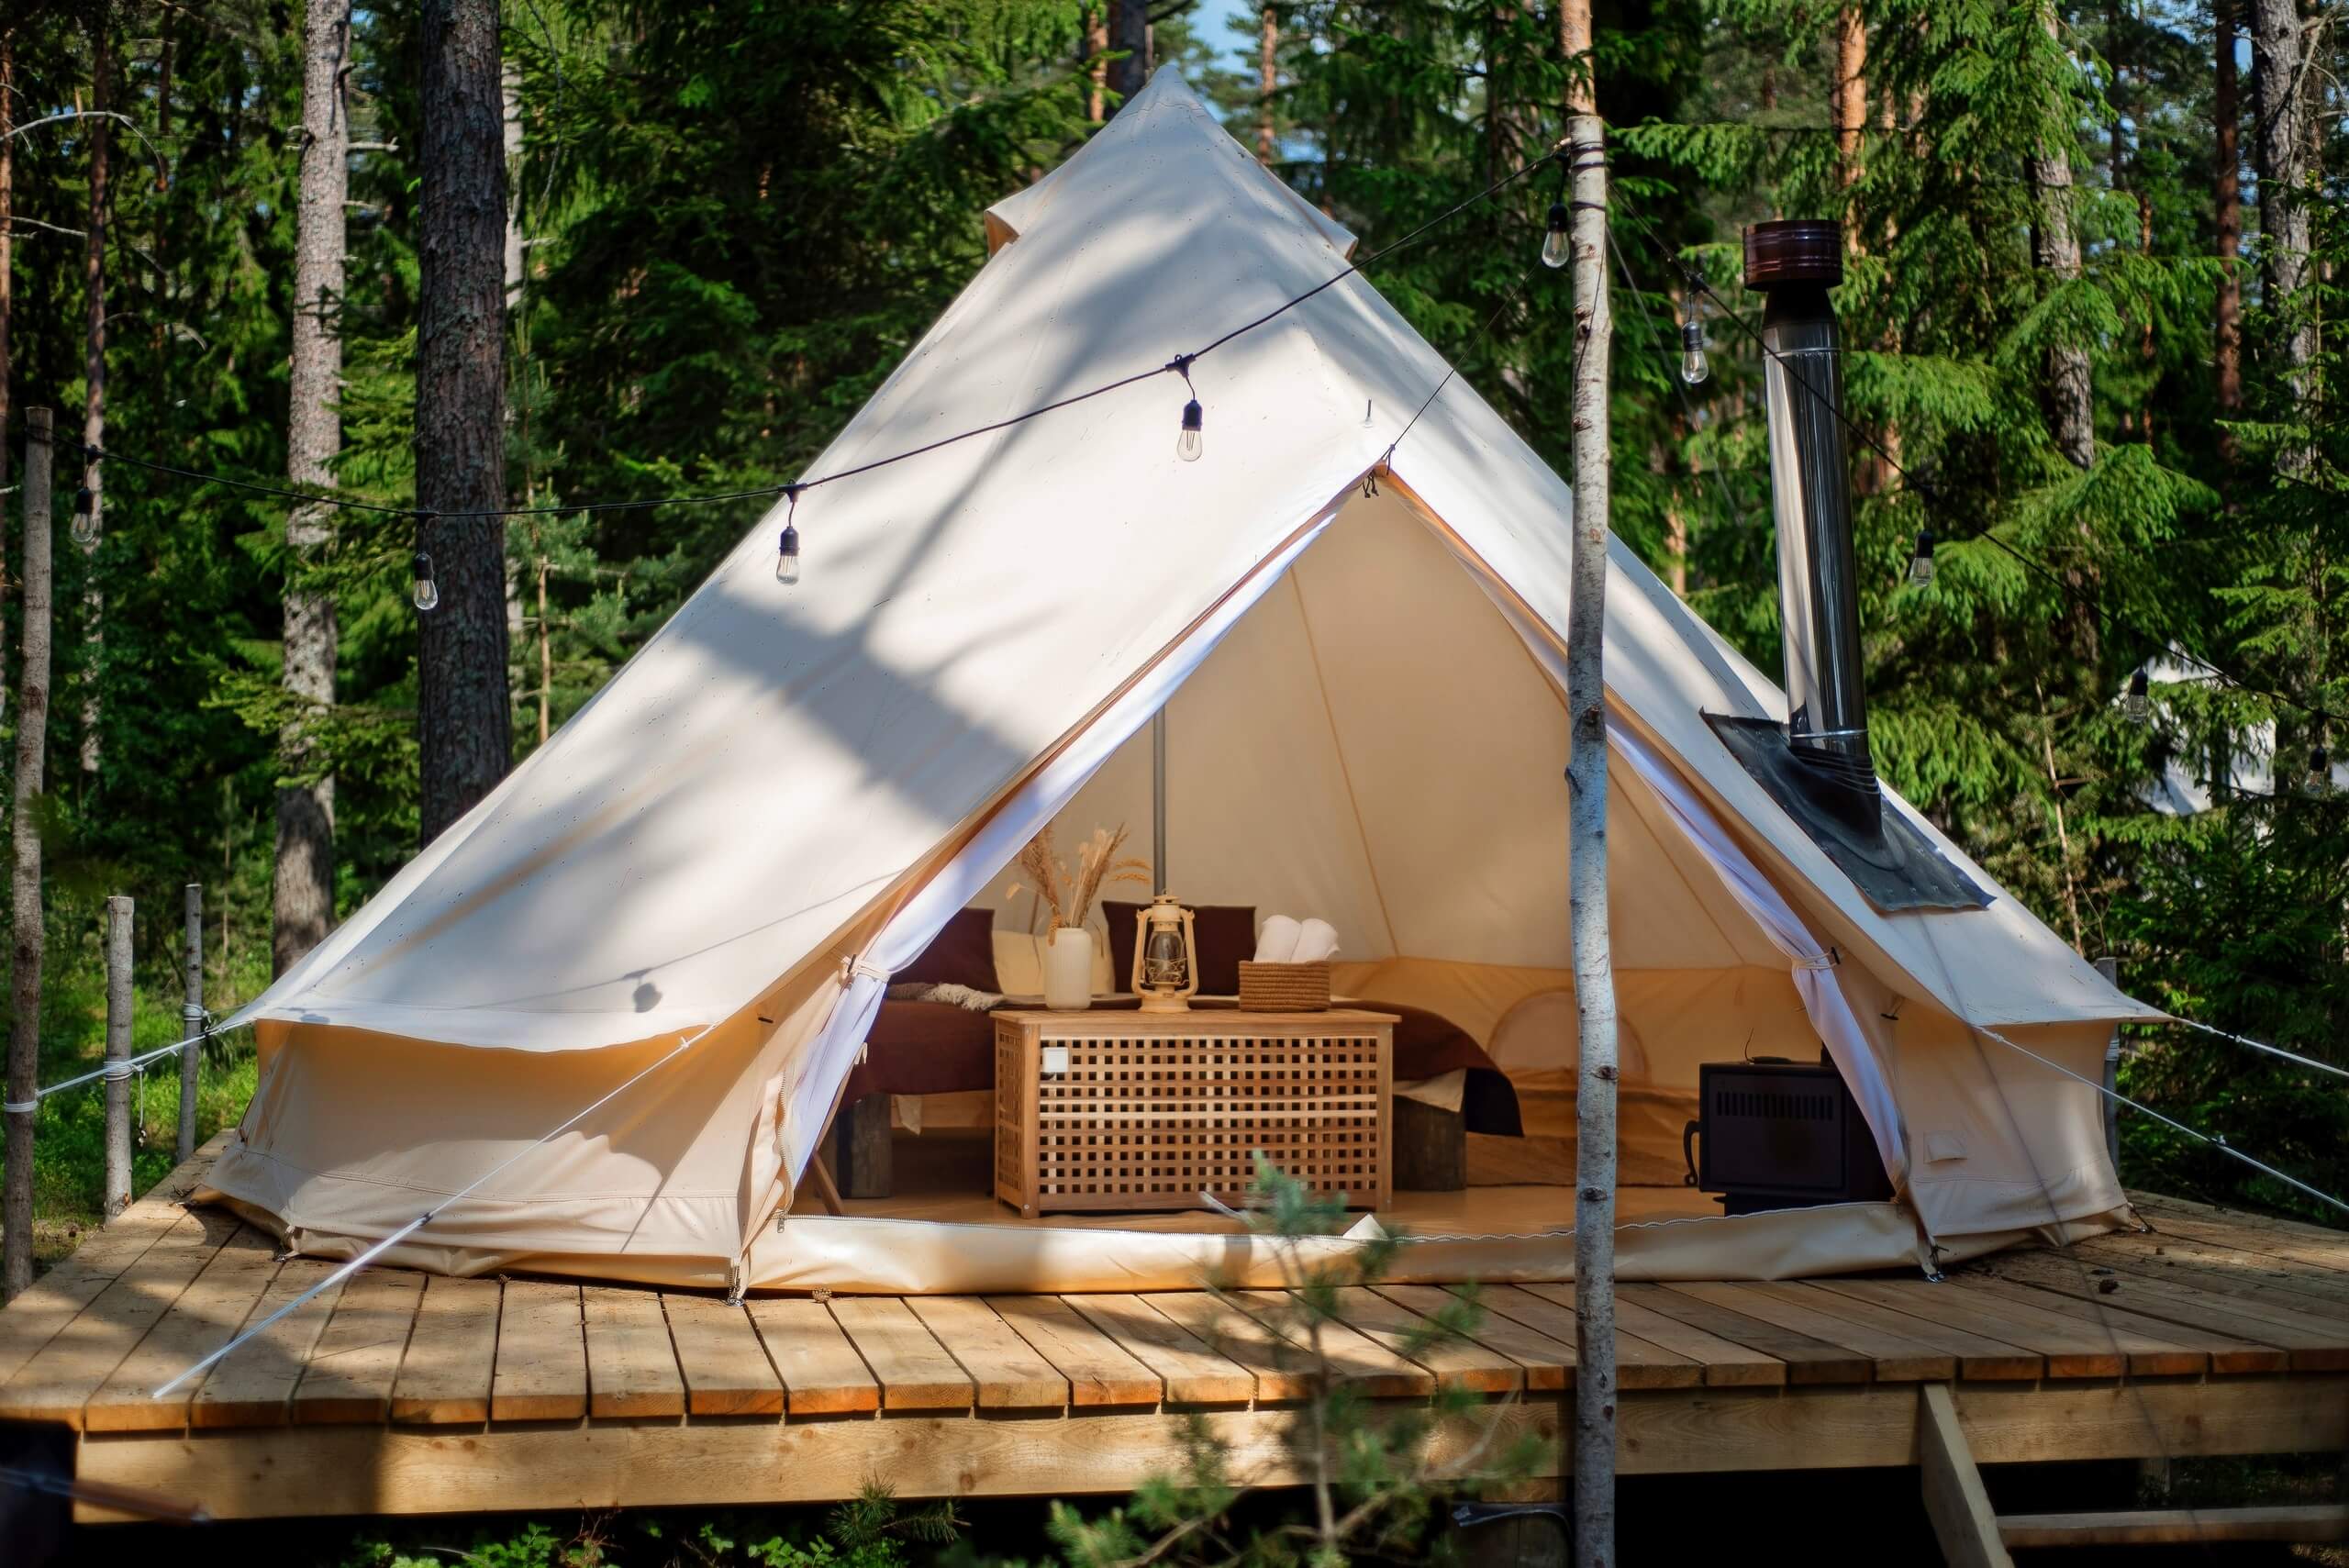 Палатка установлена на деревянном подиуме.